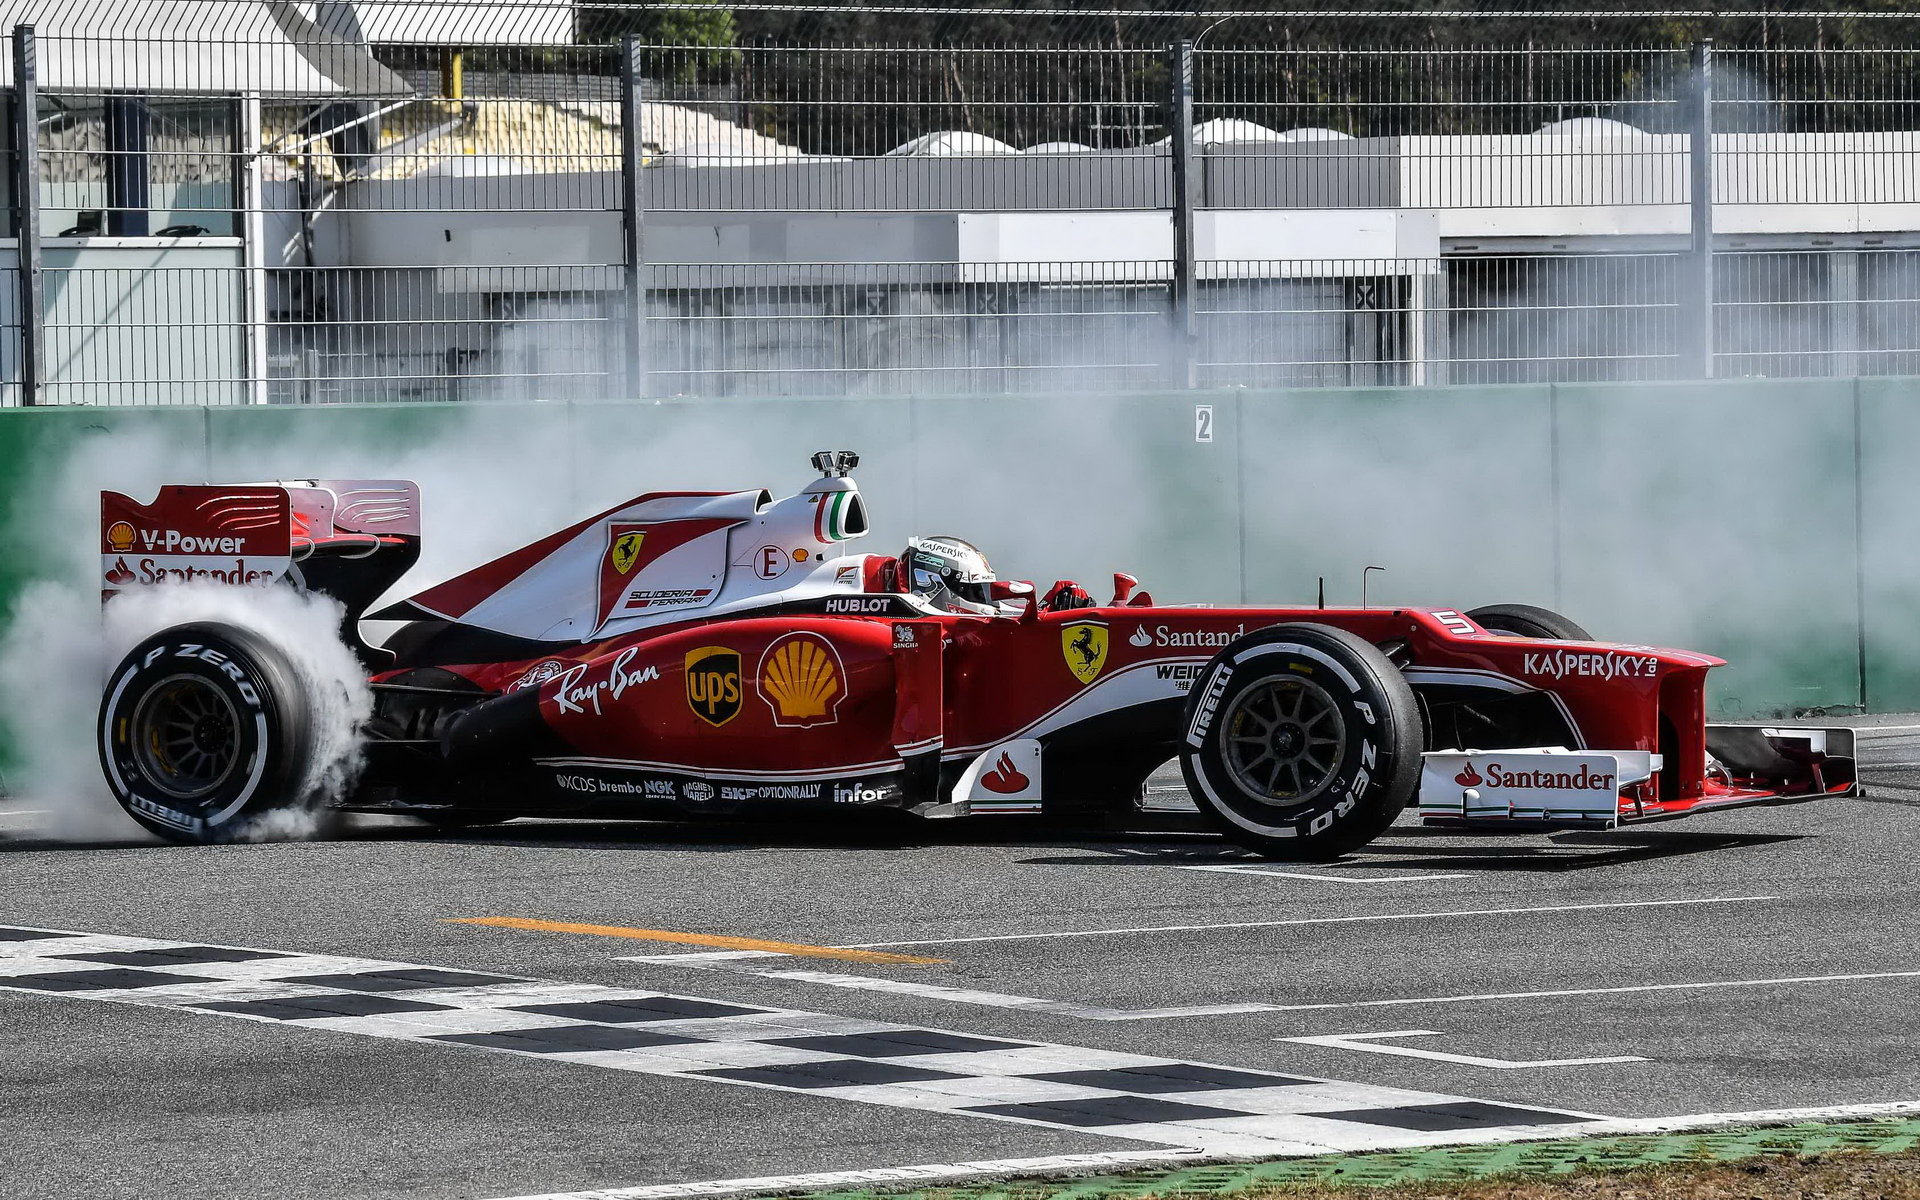 Opotřebení pneu se Vettel bojí - pokud se tak neděje záměrně